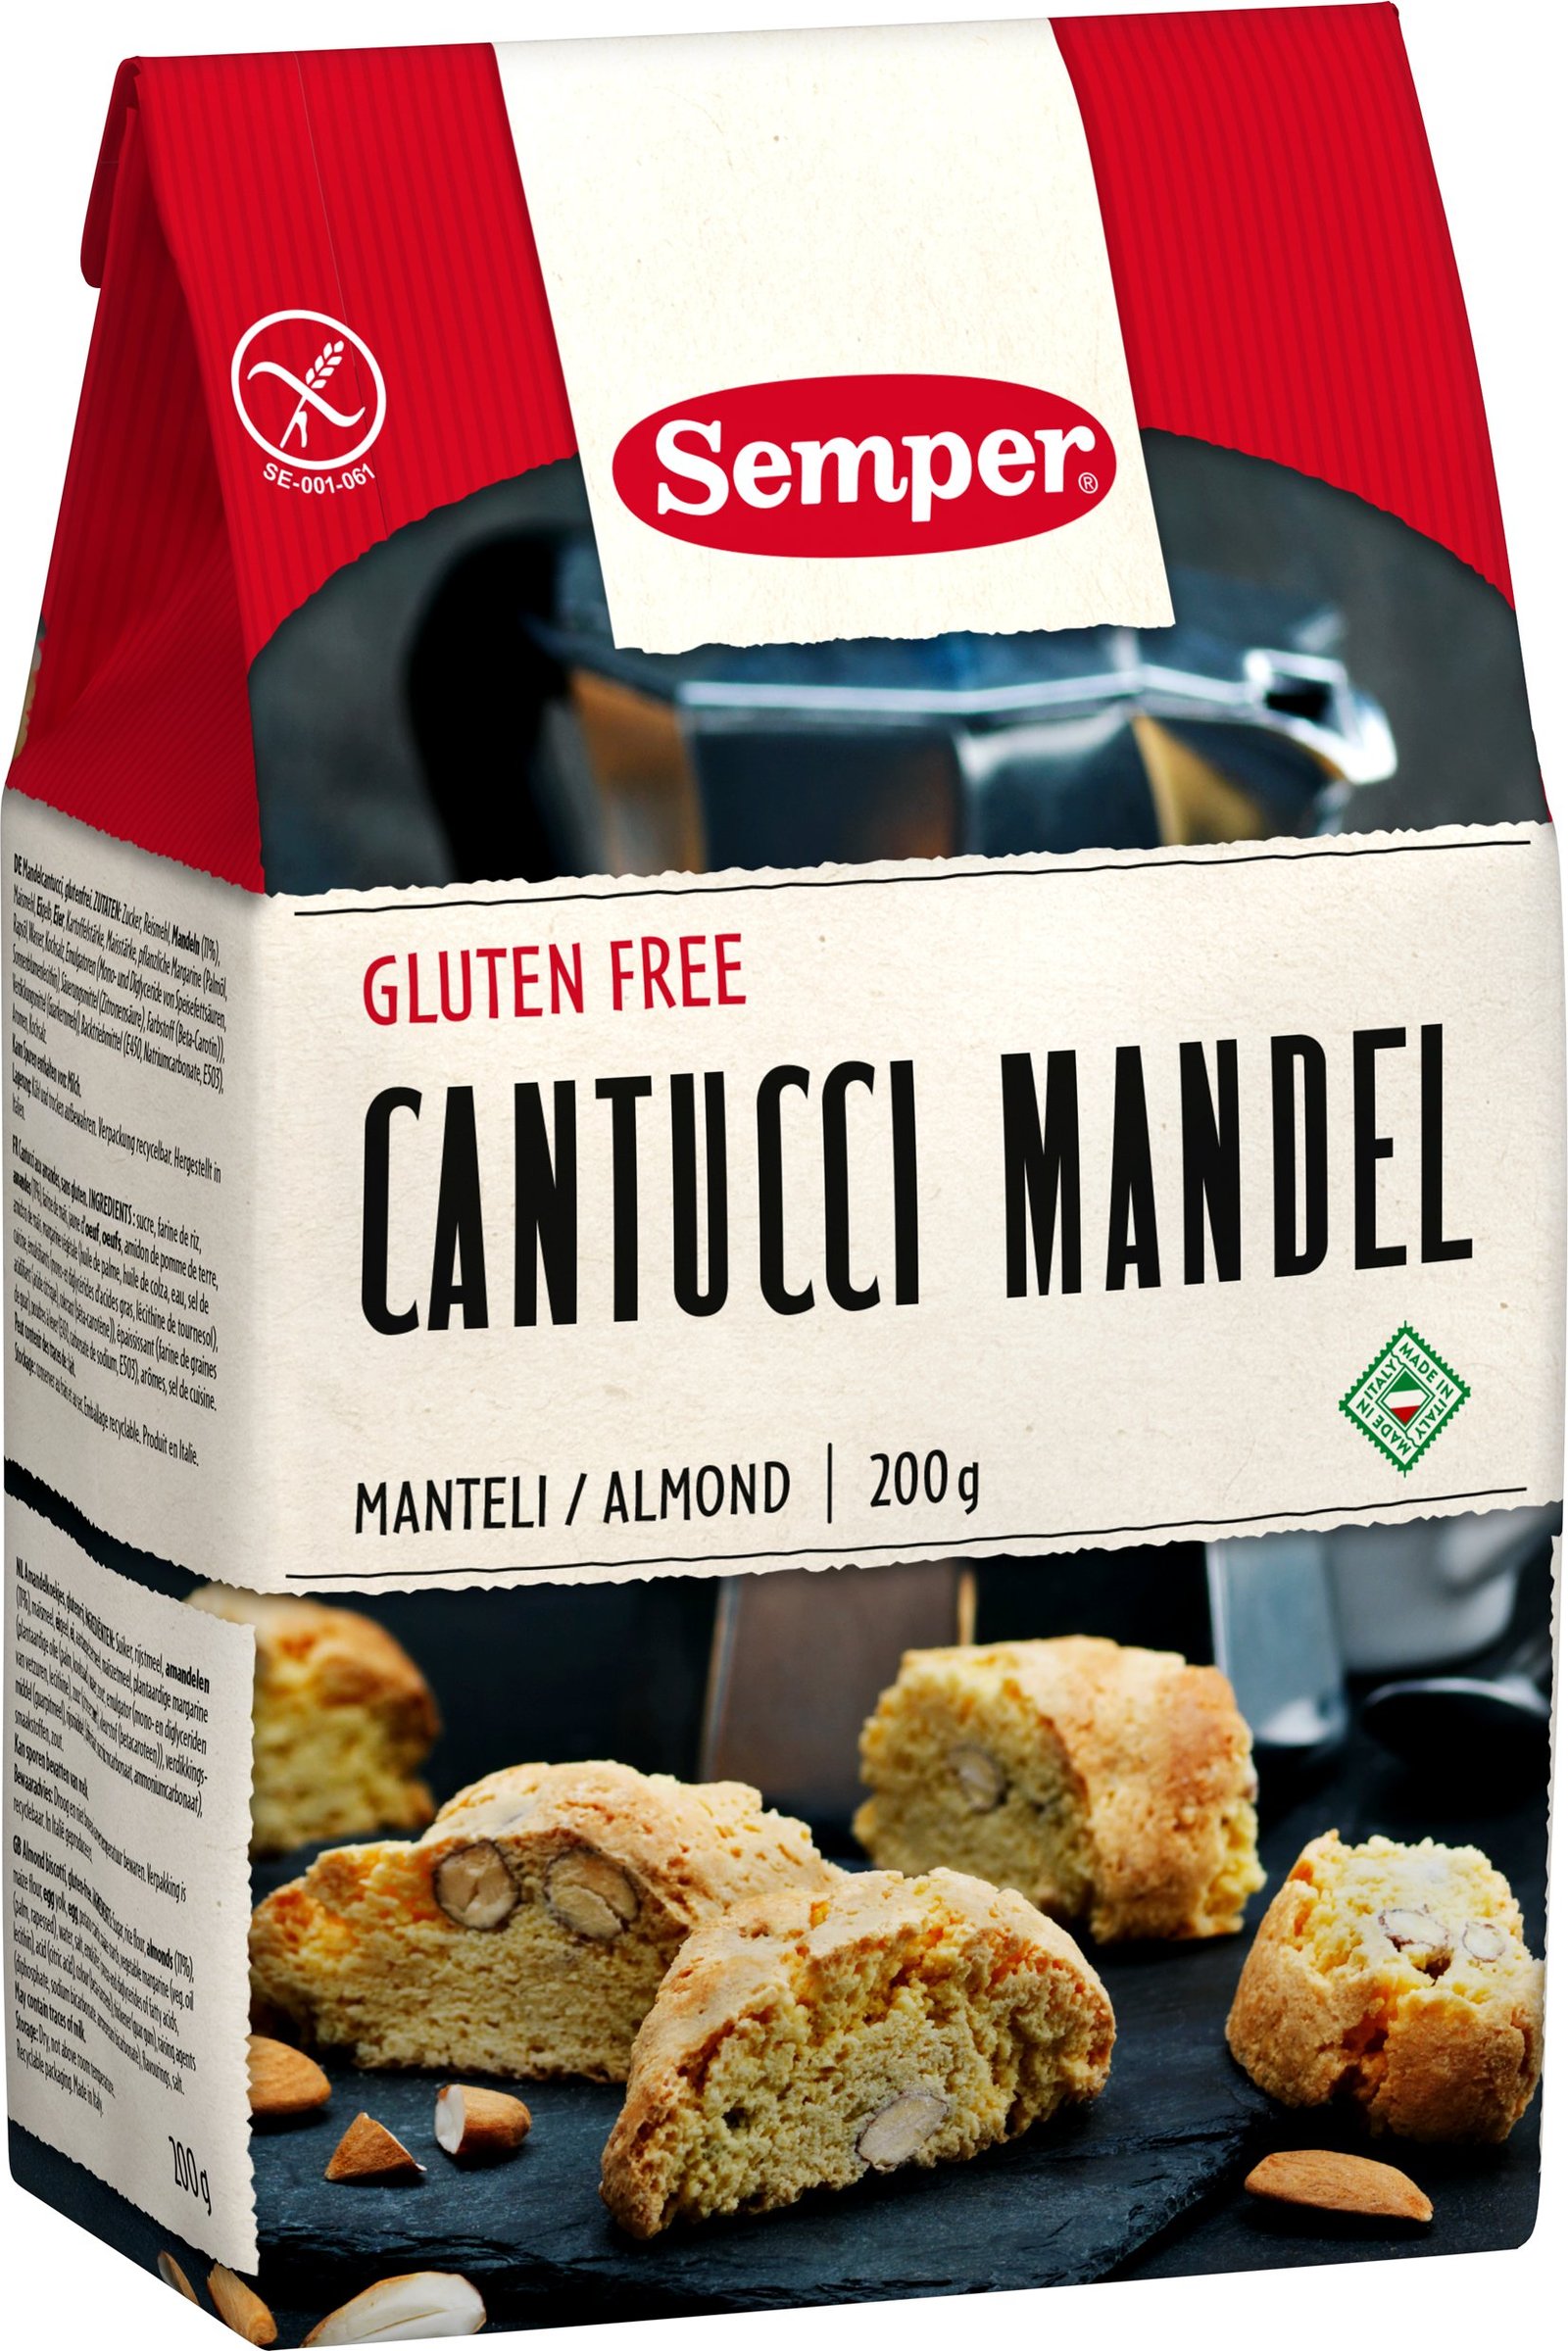 Semper Cantucci Mandel Glutenfri 200 g